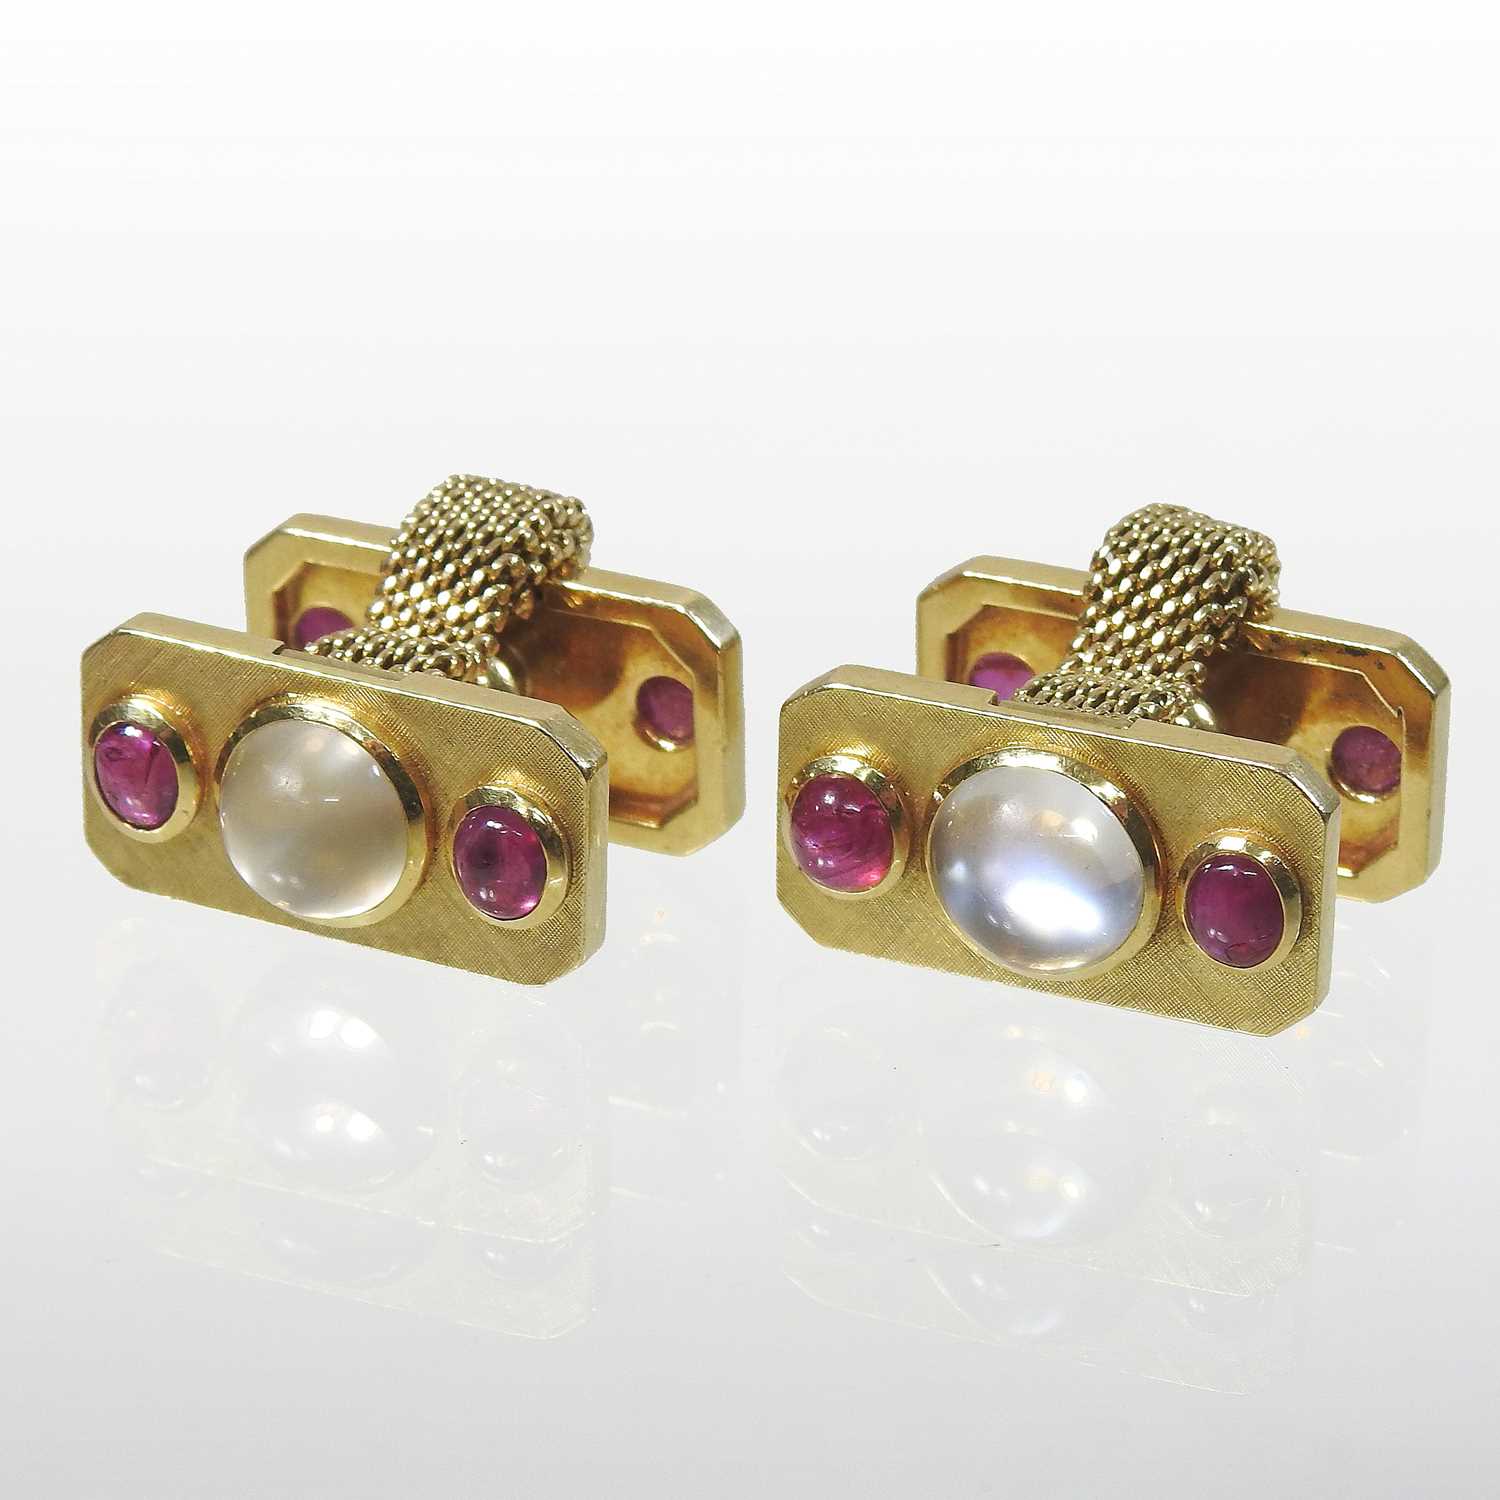 Lot 16 - A pair of Swiss Meister 18 carat gold cufflinks